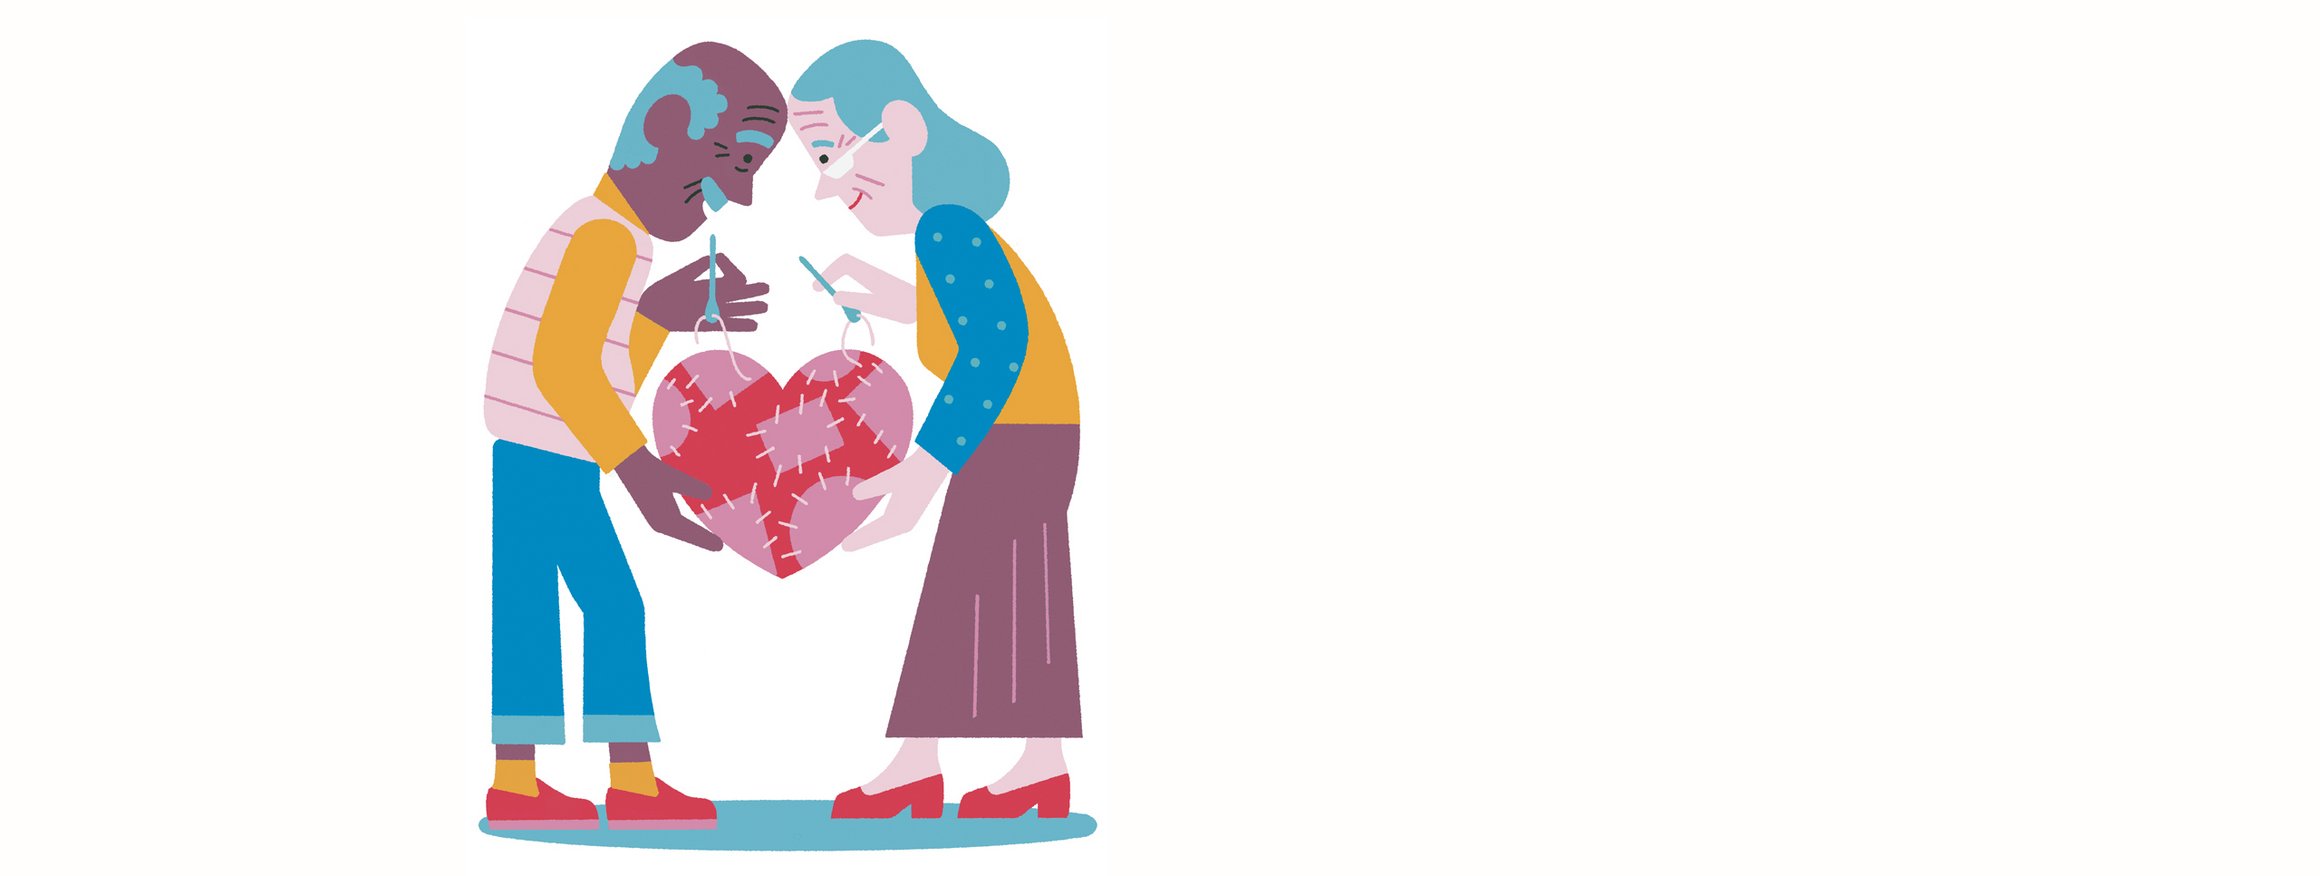 Die Illustration zeigt ein älteres Ehepaar, das gemeinsam mit Nadel und Faden liebevoll ein Herz flickt